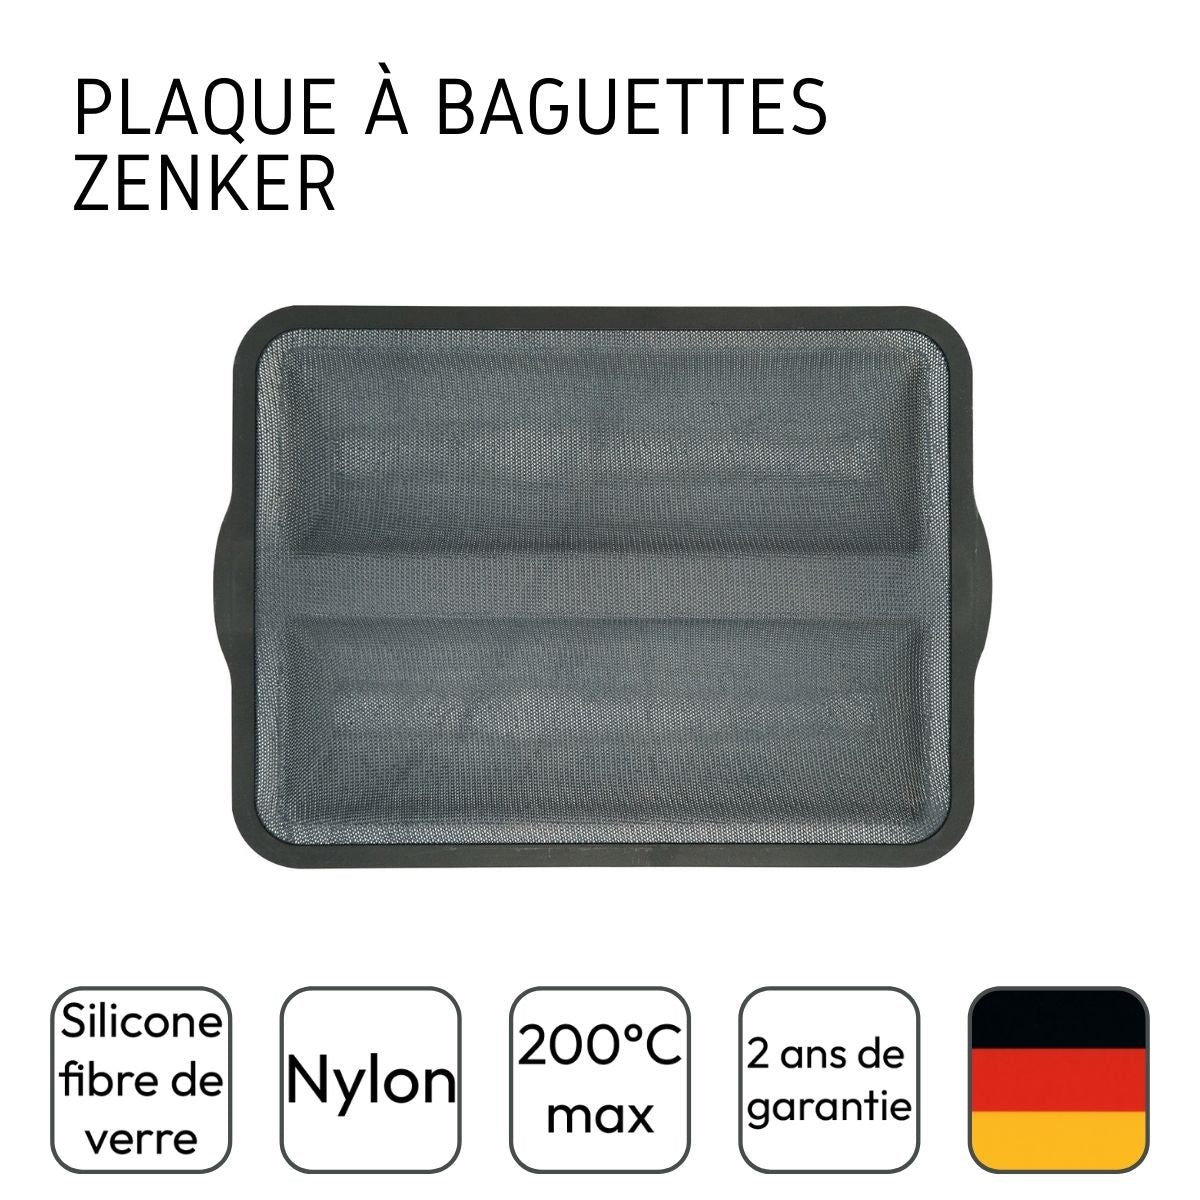 Moule à baguettes de pain Silicone fibre de verre Zenker - www